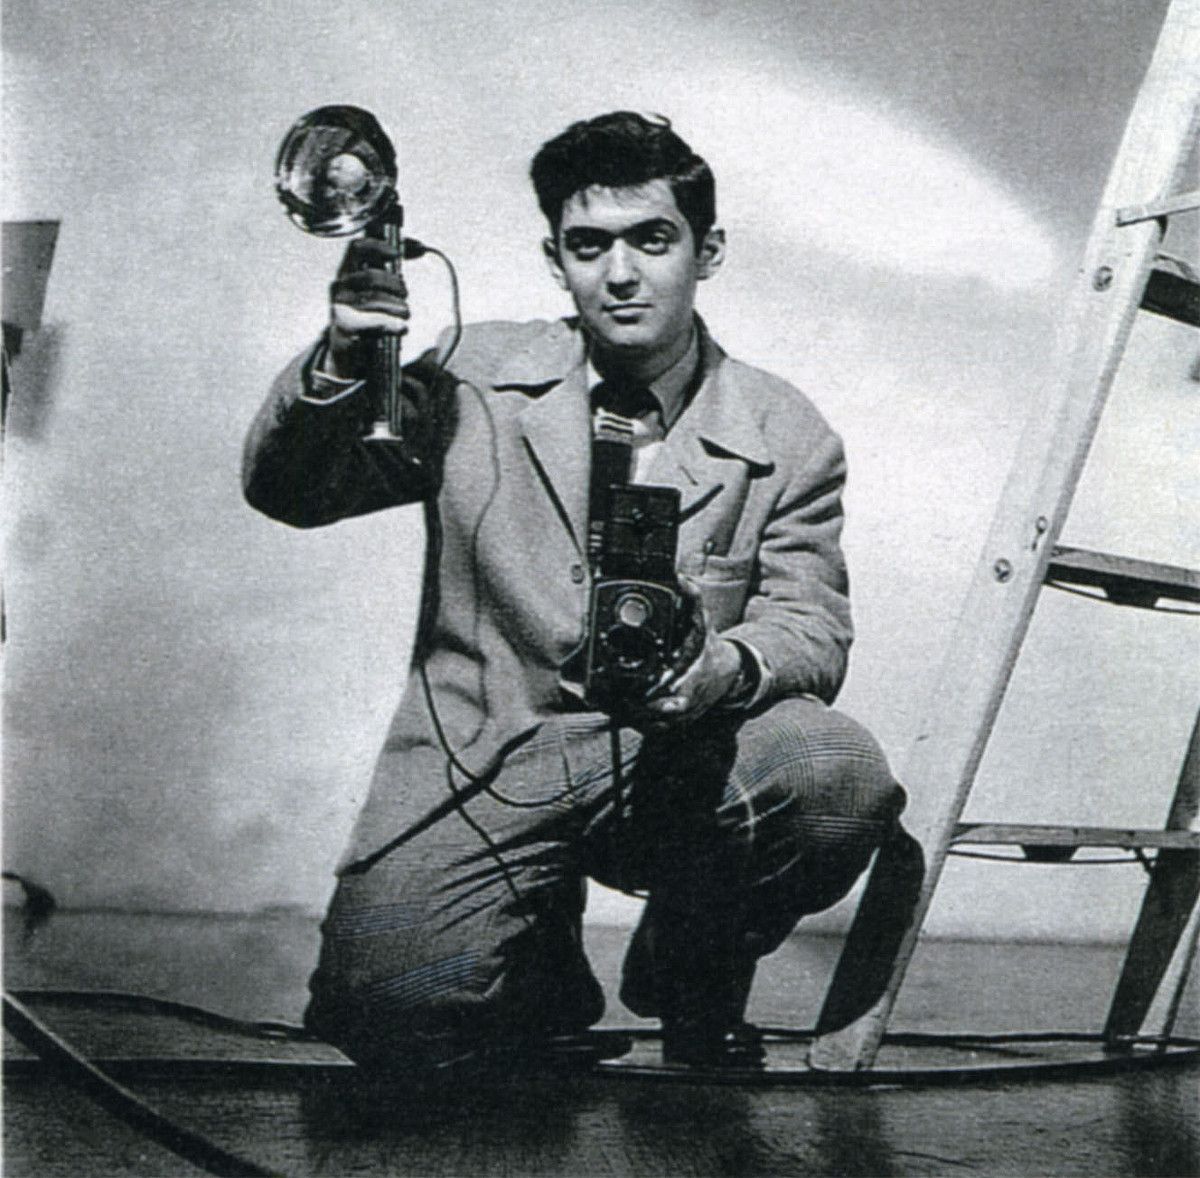 Stanley Kubrick 20 urte zituela, 1948an. BERRIA.